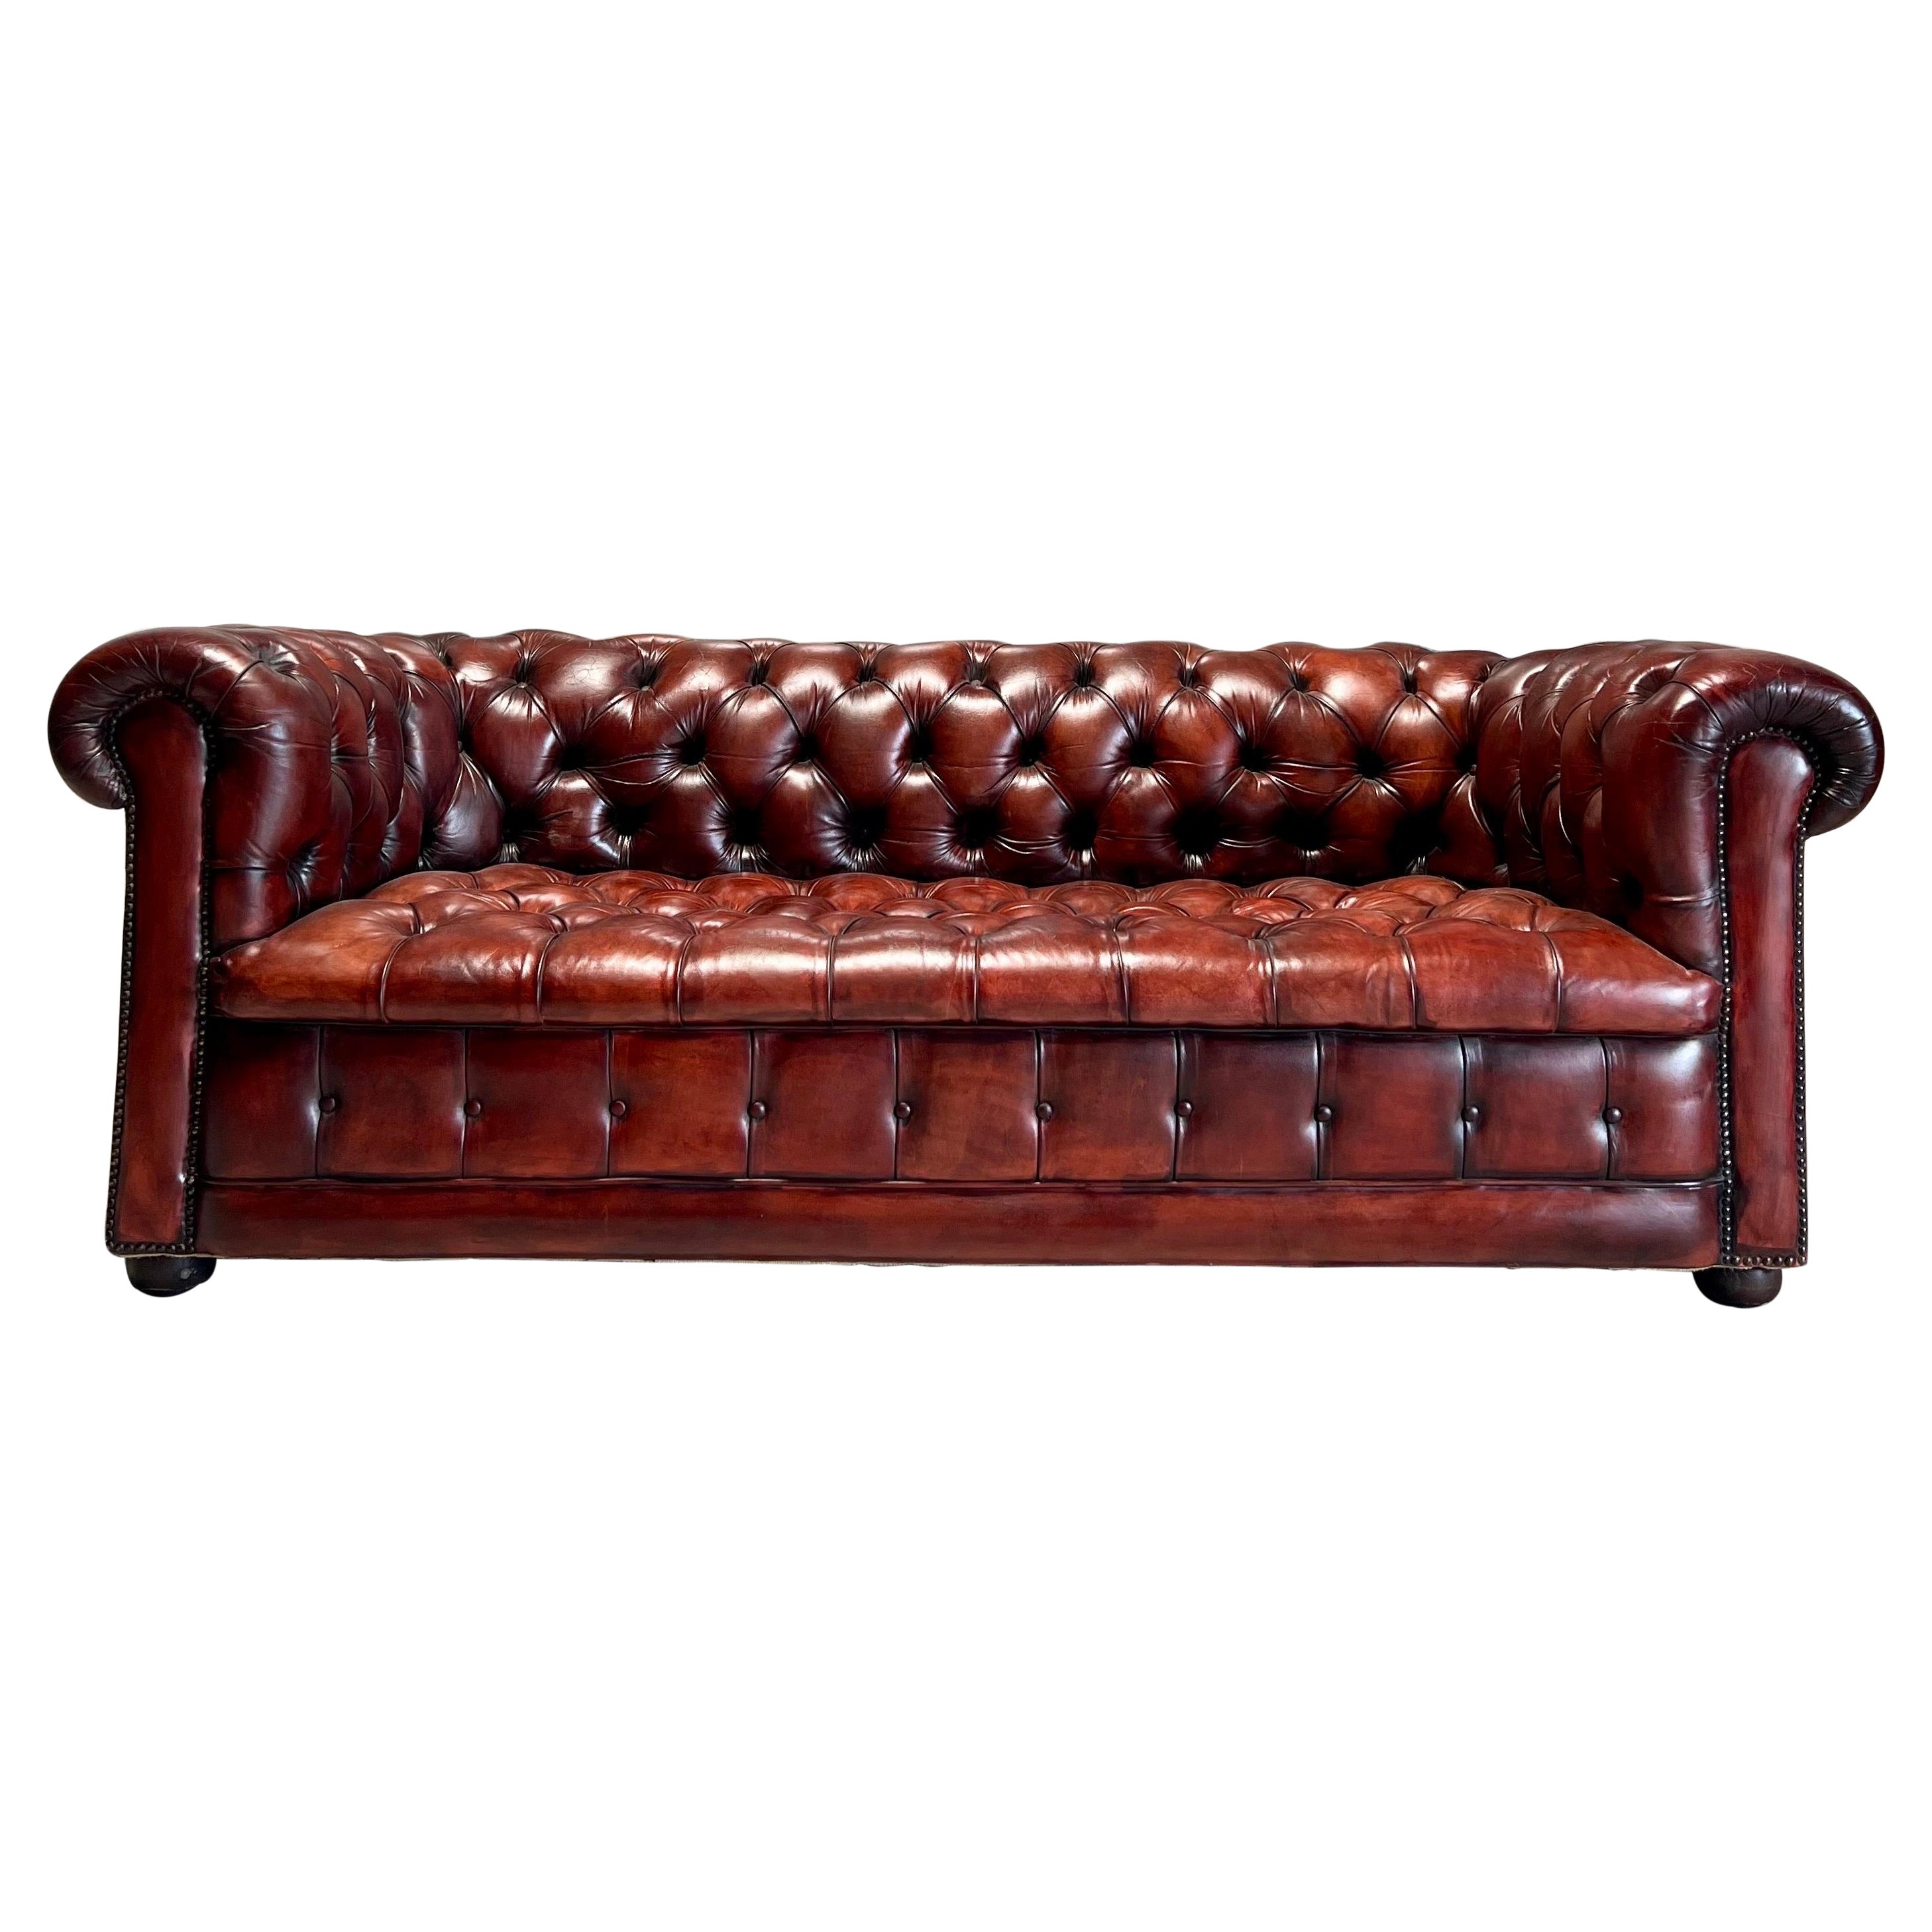 Superbe canapé Chesterfield du milieu du XIXe siècle en cuir teinté à la main